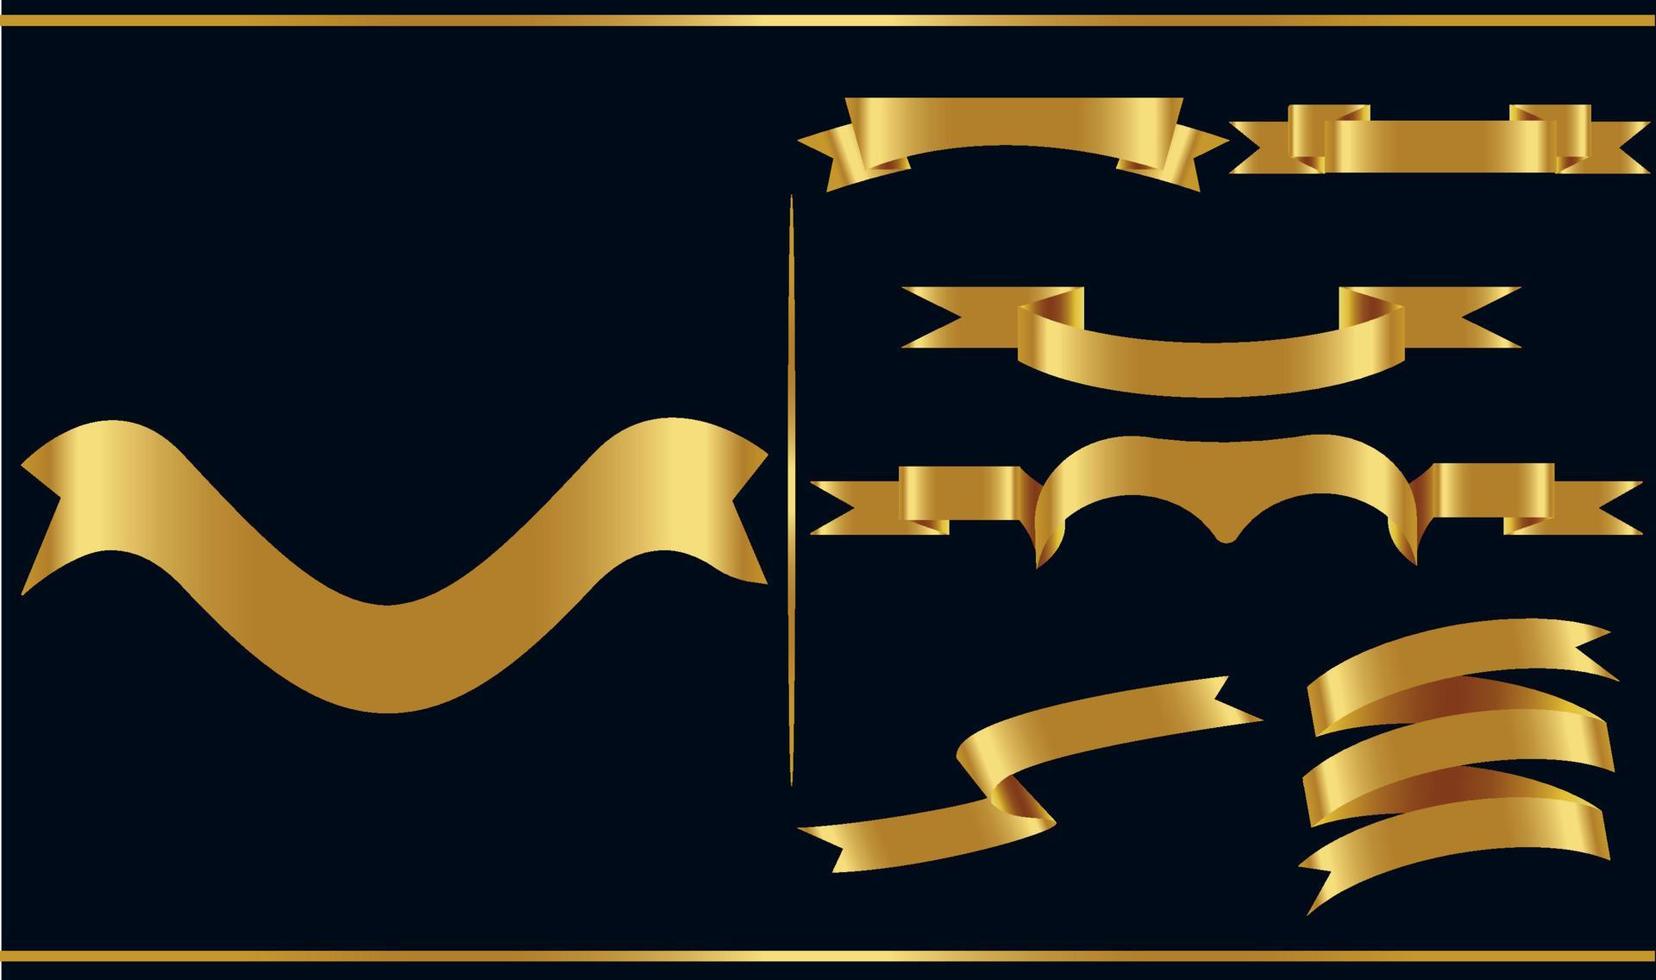 set di banner vettoriali nastro lucido oro. collezione di nastri. illustrazione di disegno vettoriale